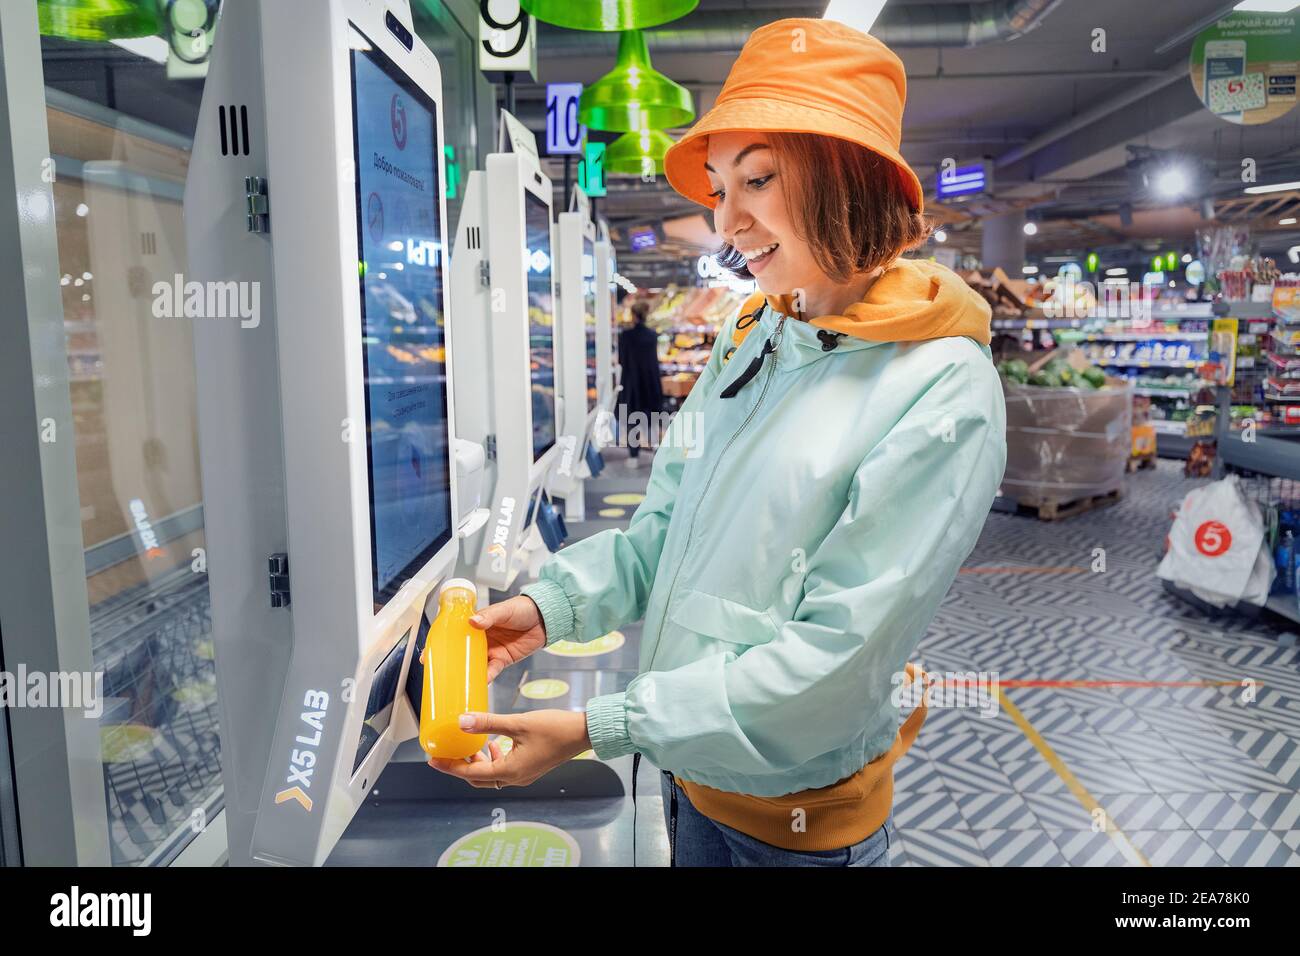 02. September 2020, Moskau, Russland: Glückliche junge Kundin Frau kauft und zahlt für eine Flasche Orangensaft an der Kasse eines Self-Service-Maschine in Stockfoto